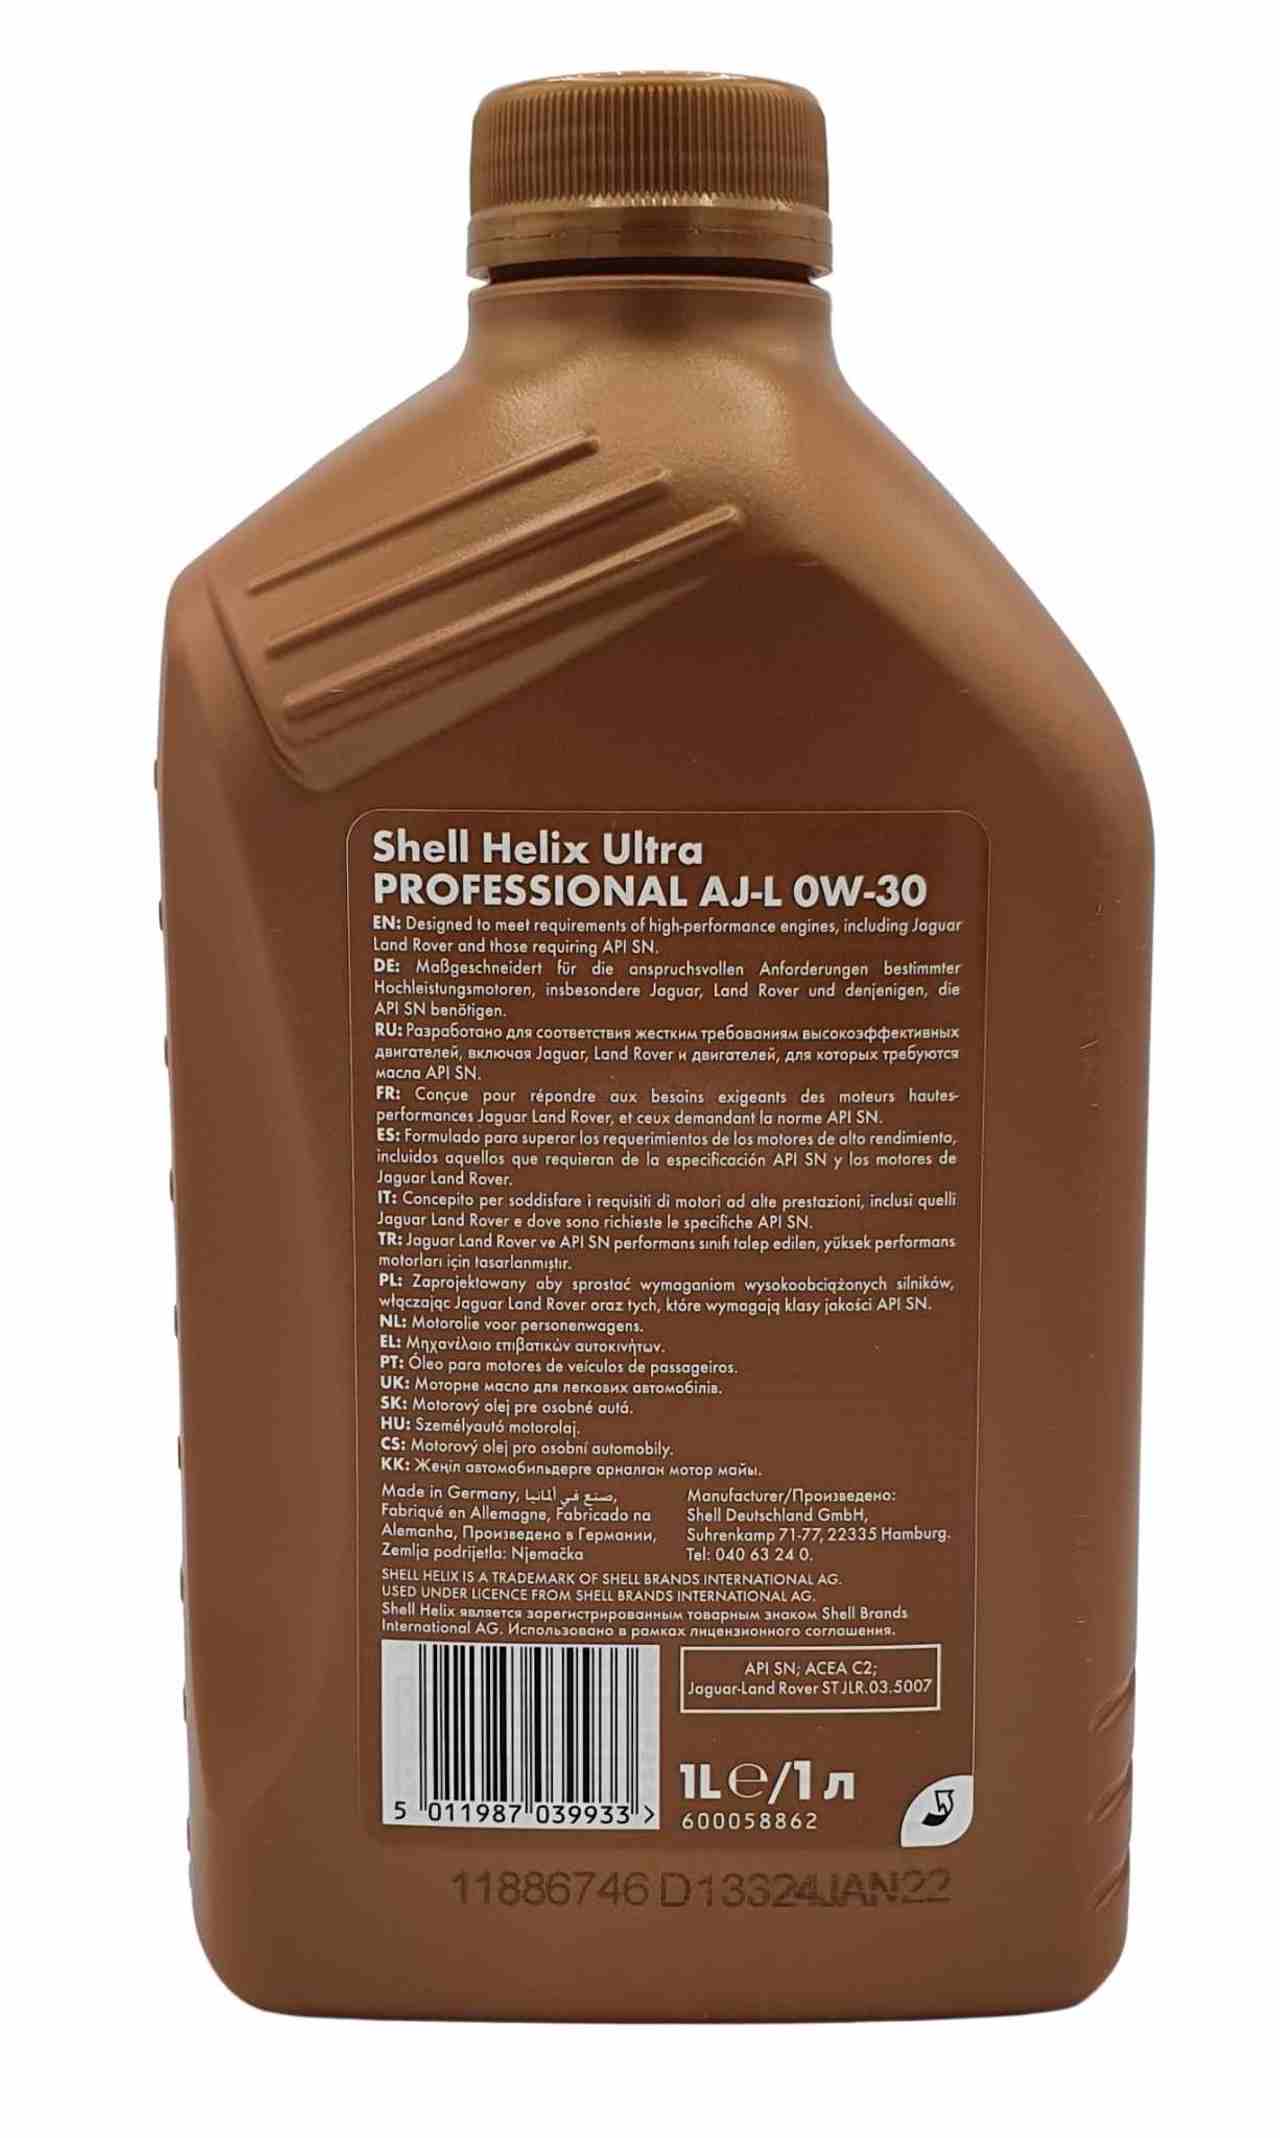 Shell Helix Ultra Professional AJ-L 0W-30 1 Liter